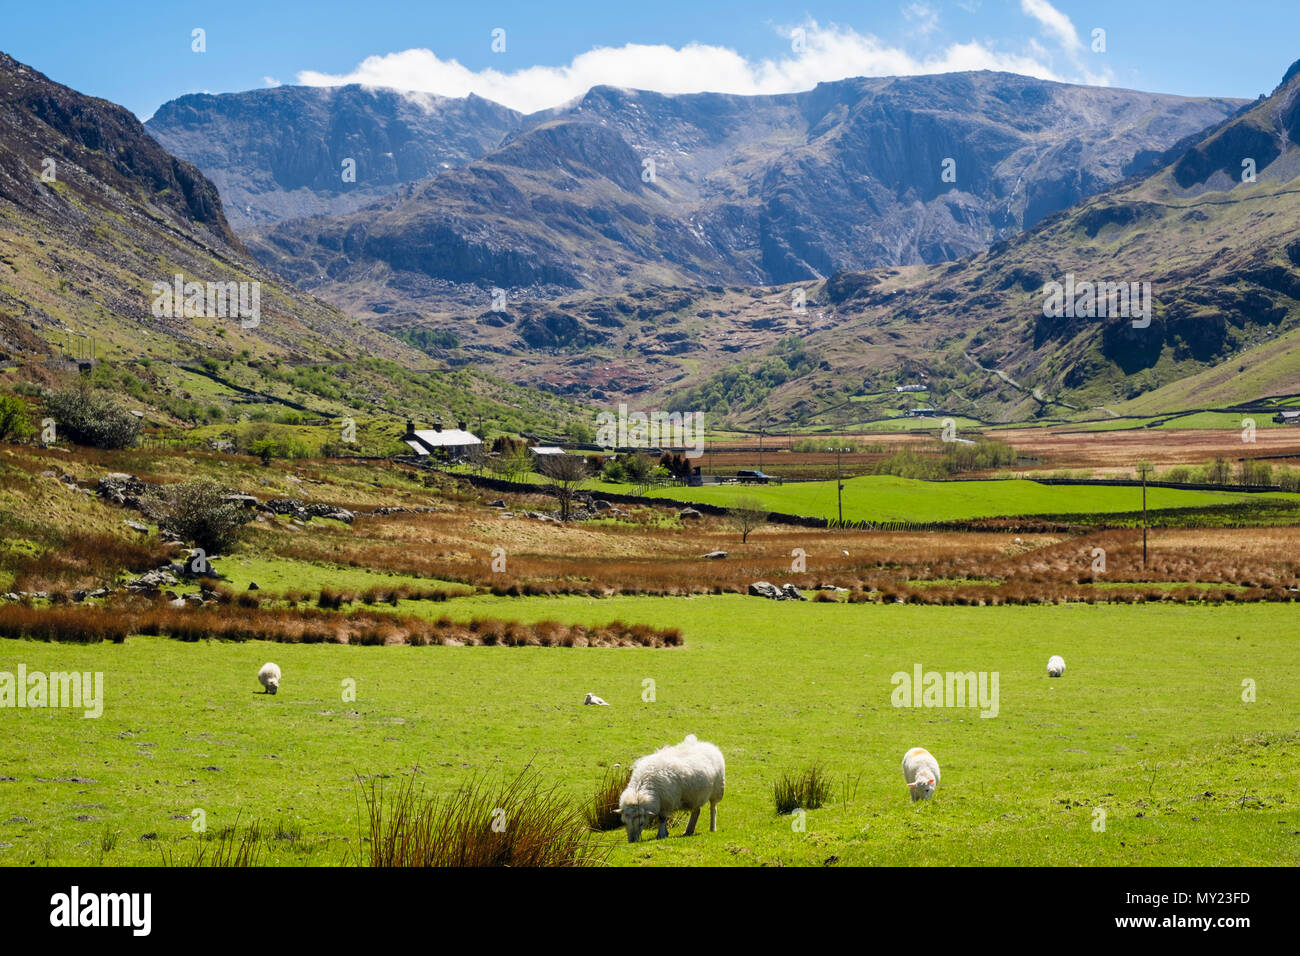 En regardant la vallée de Nant Ffrancon jusqu'aux montagnes de Glyderau avec des pâturages de moutons dans les champs de campagne dans le parc national de Snowdonia. Ogwen BethesdaNorth Wales Royaume-Uni Banque D'Images